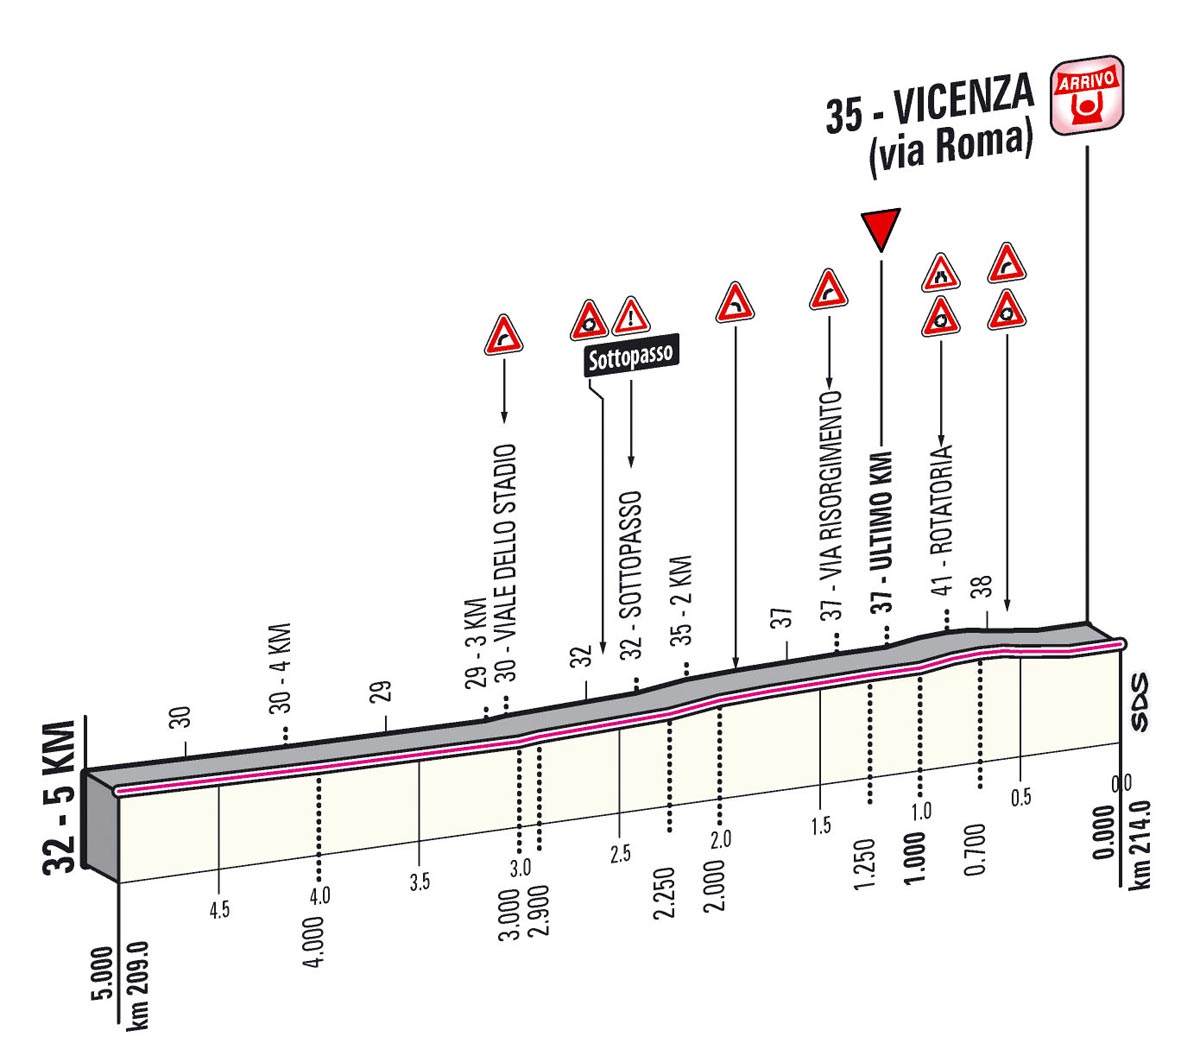 Giro d'Italia 2013 stage 17 last kms